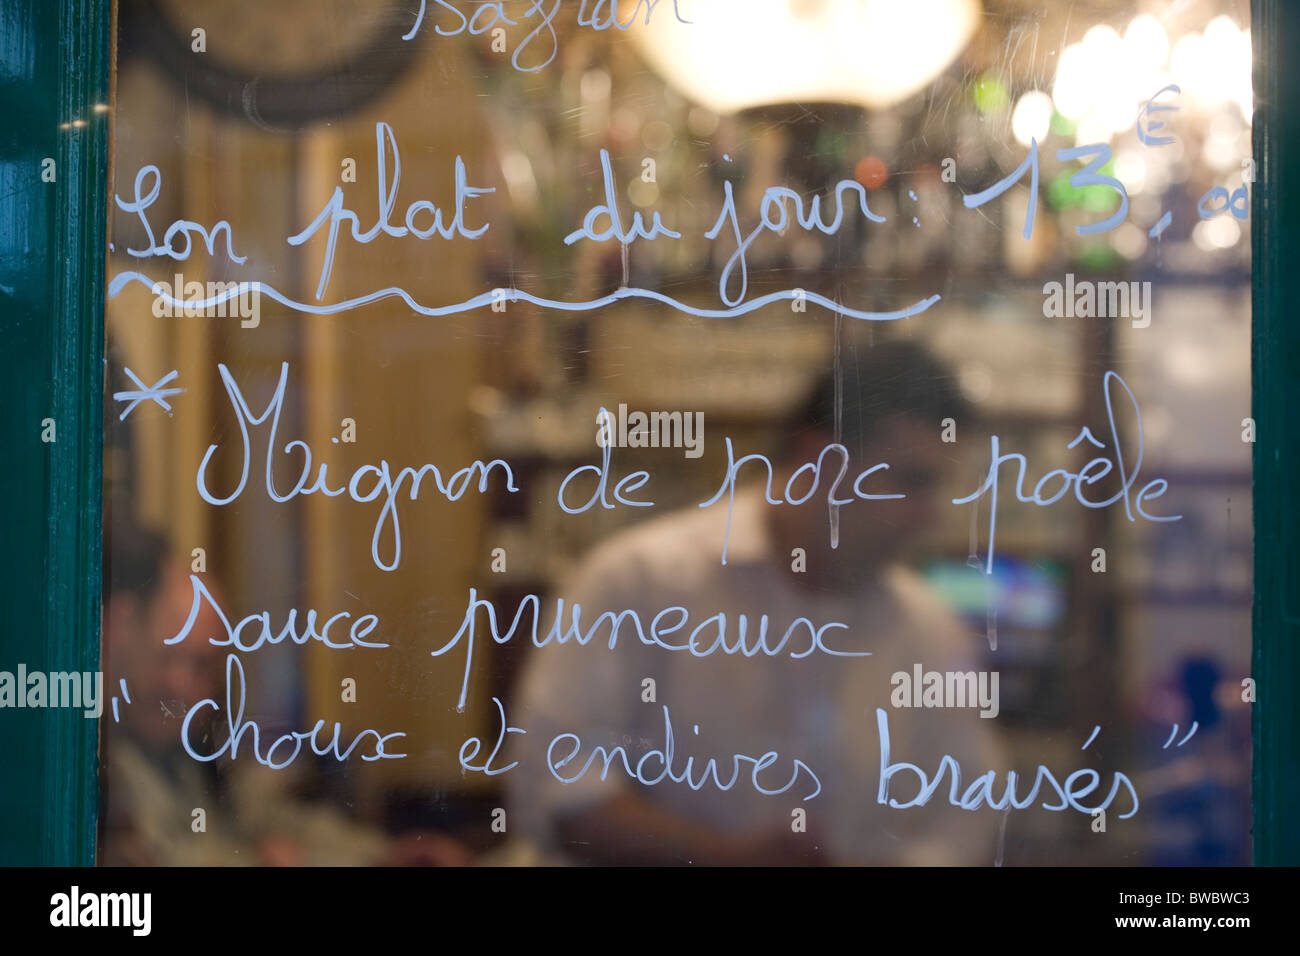 Plat du jour au petit fer a cheval, un bar et restaurant dans le marais, Paris Banque D'Images